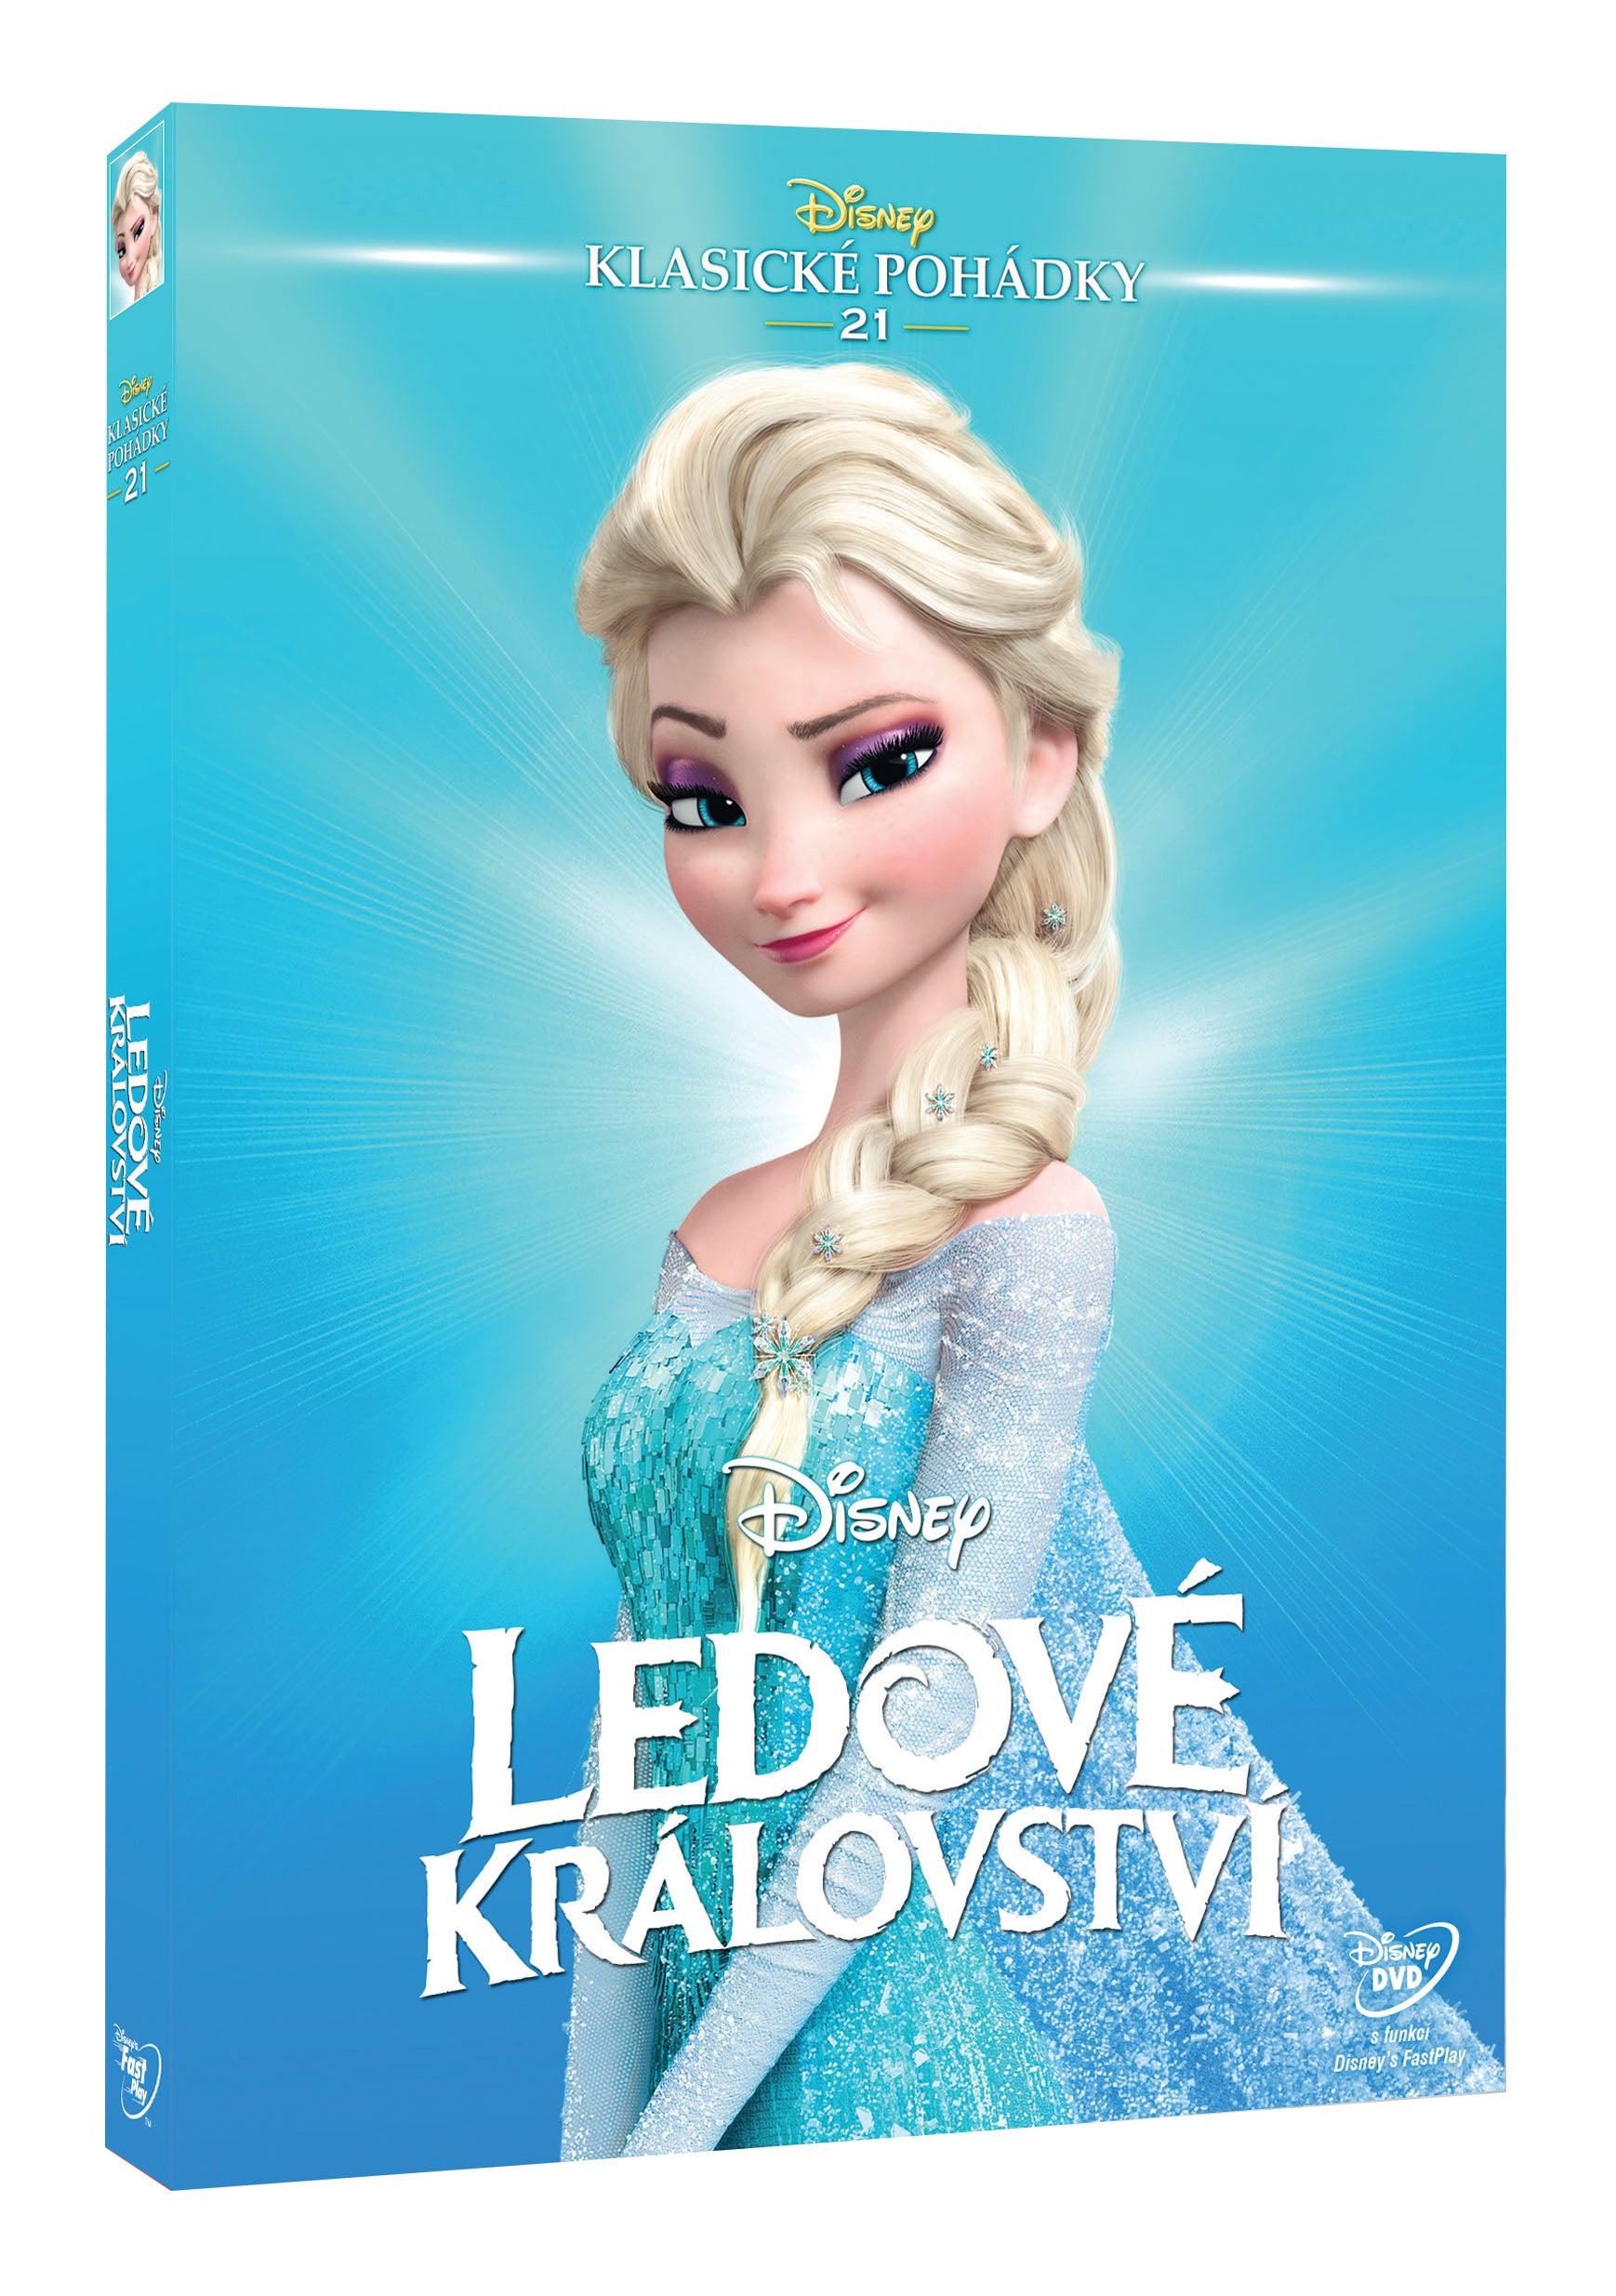 Ledove kralovstvi - Edice Disney klasicke pohadky 21. (Frozen)